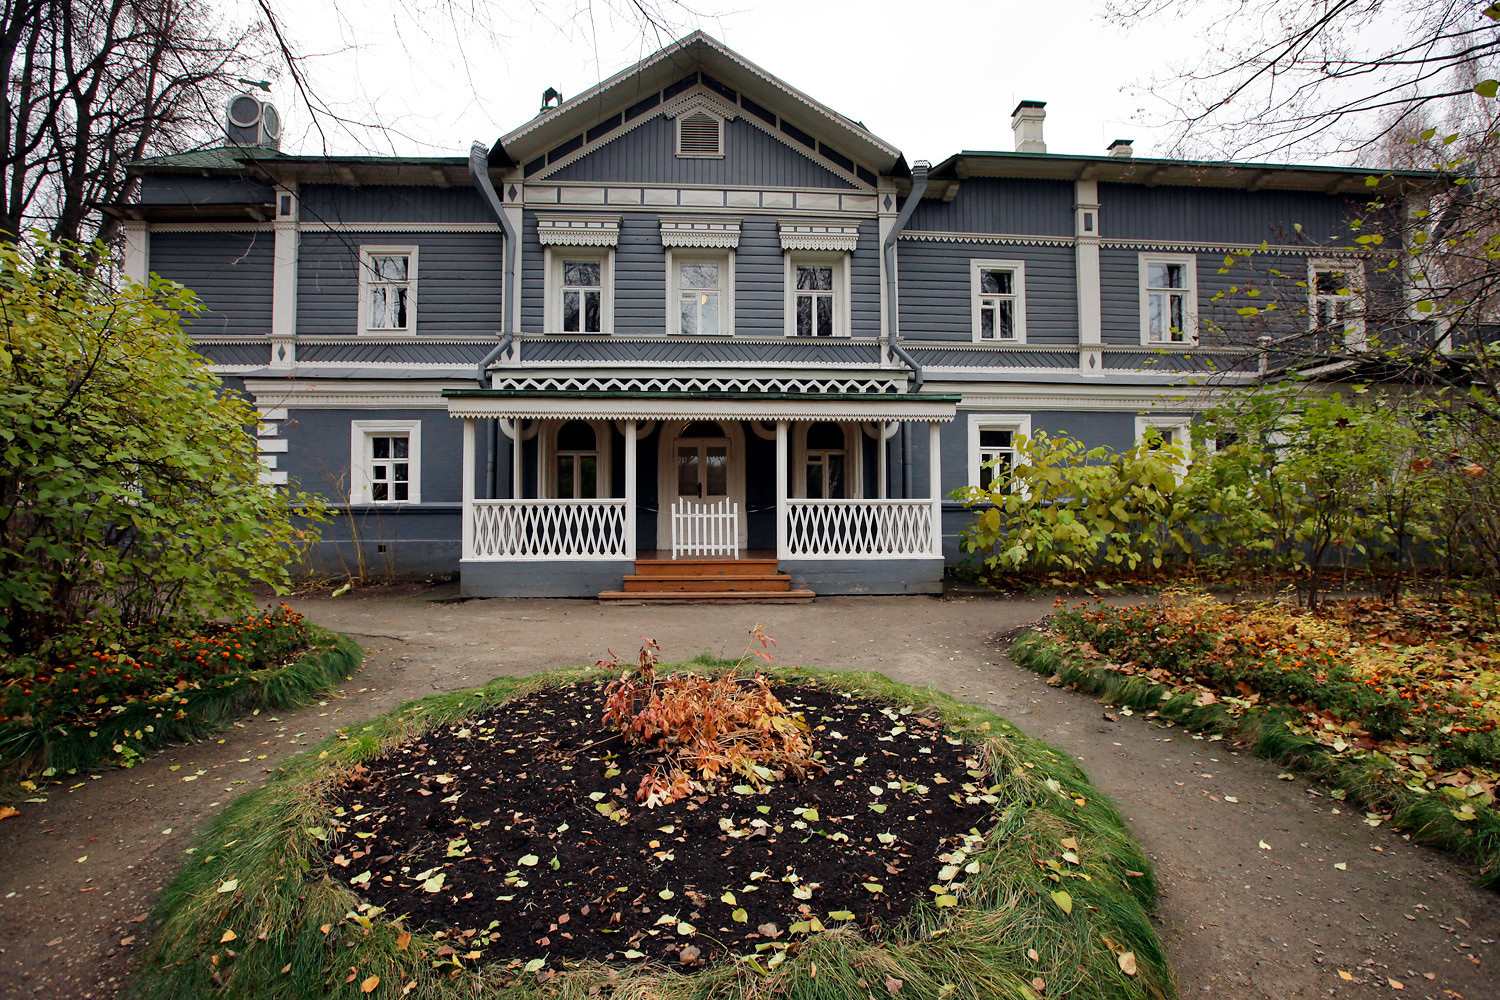 House-museum of composer Pyotr Tchaikovsky.